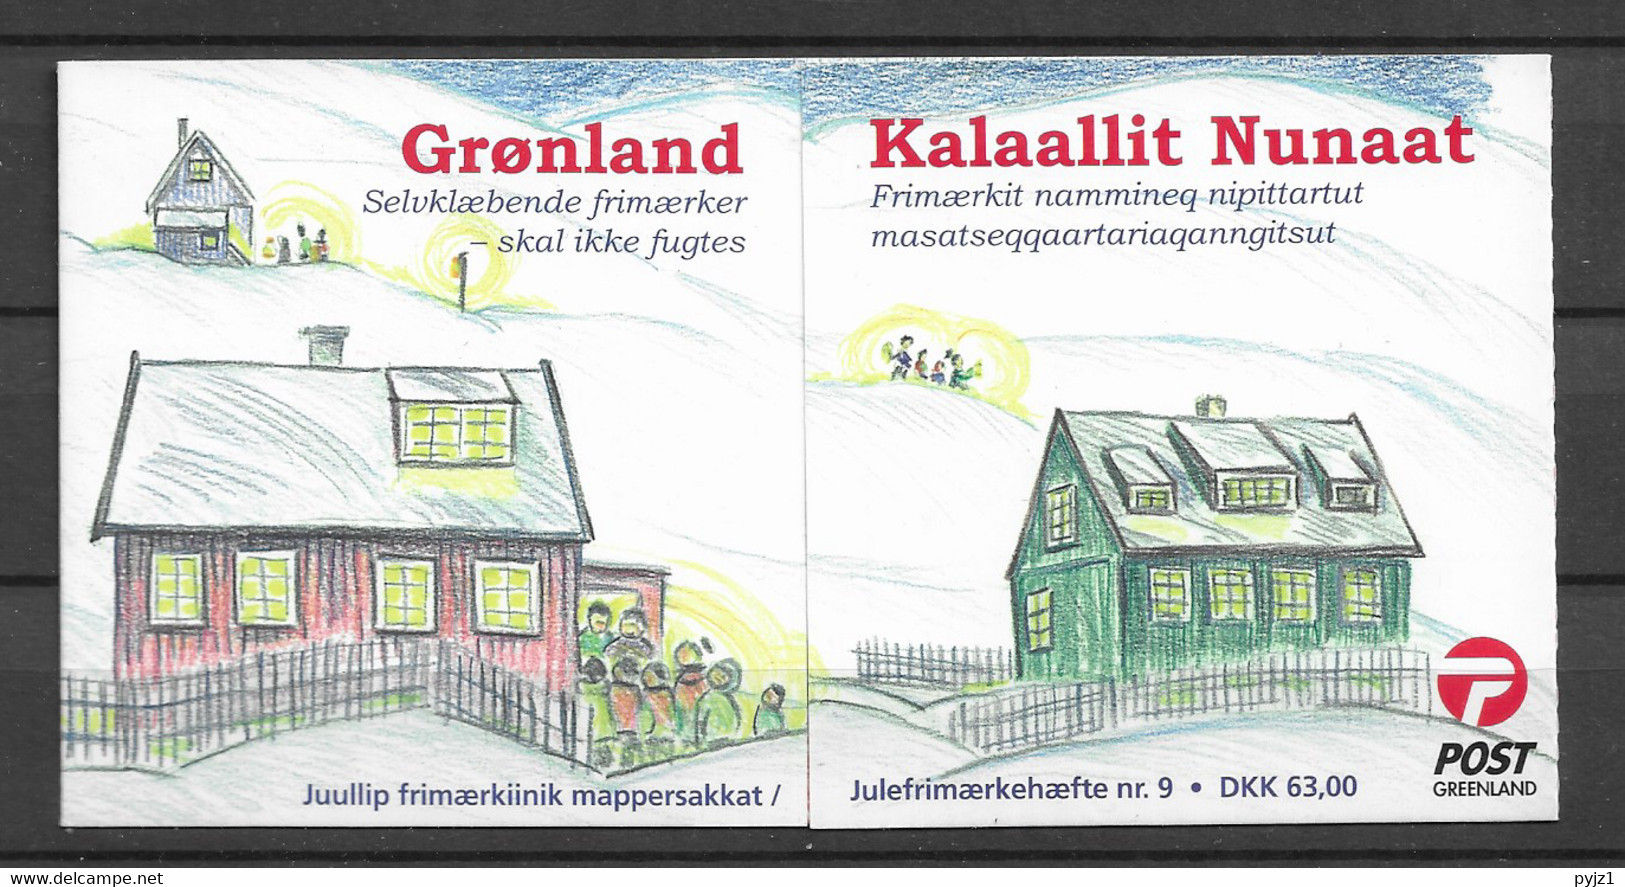 2004 MNH Greenland, Booklet Postfris** - Postzegelboekjes